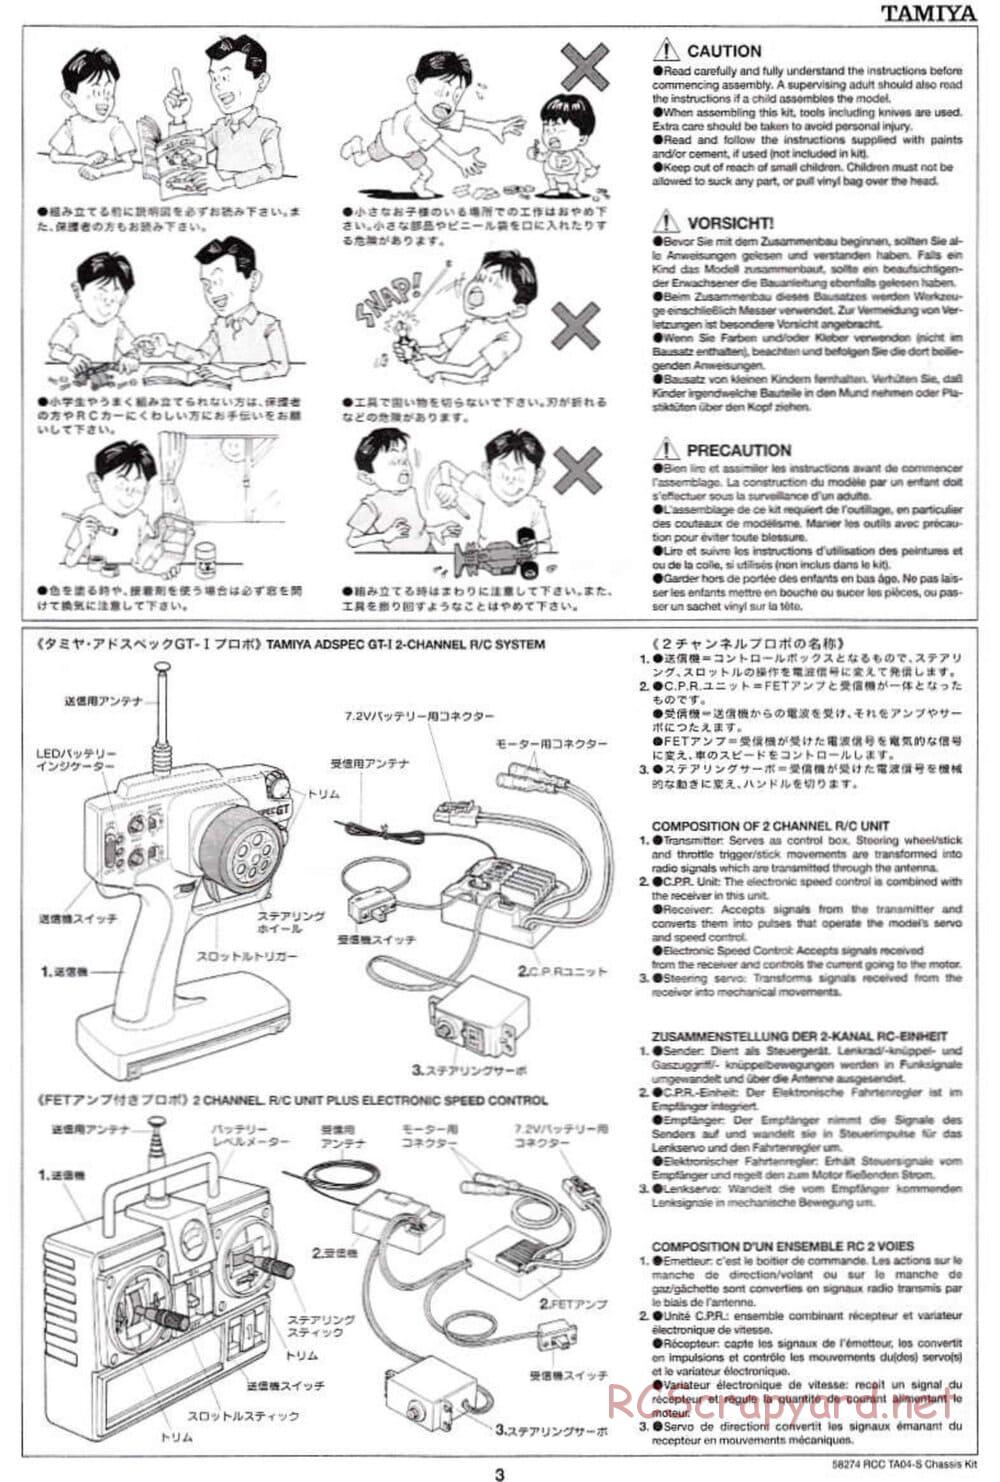 Tamiya - TA-04S Chassis - Manual - Page 3